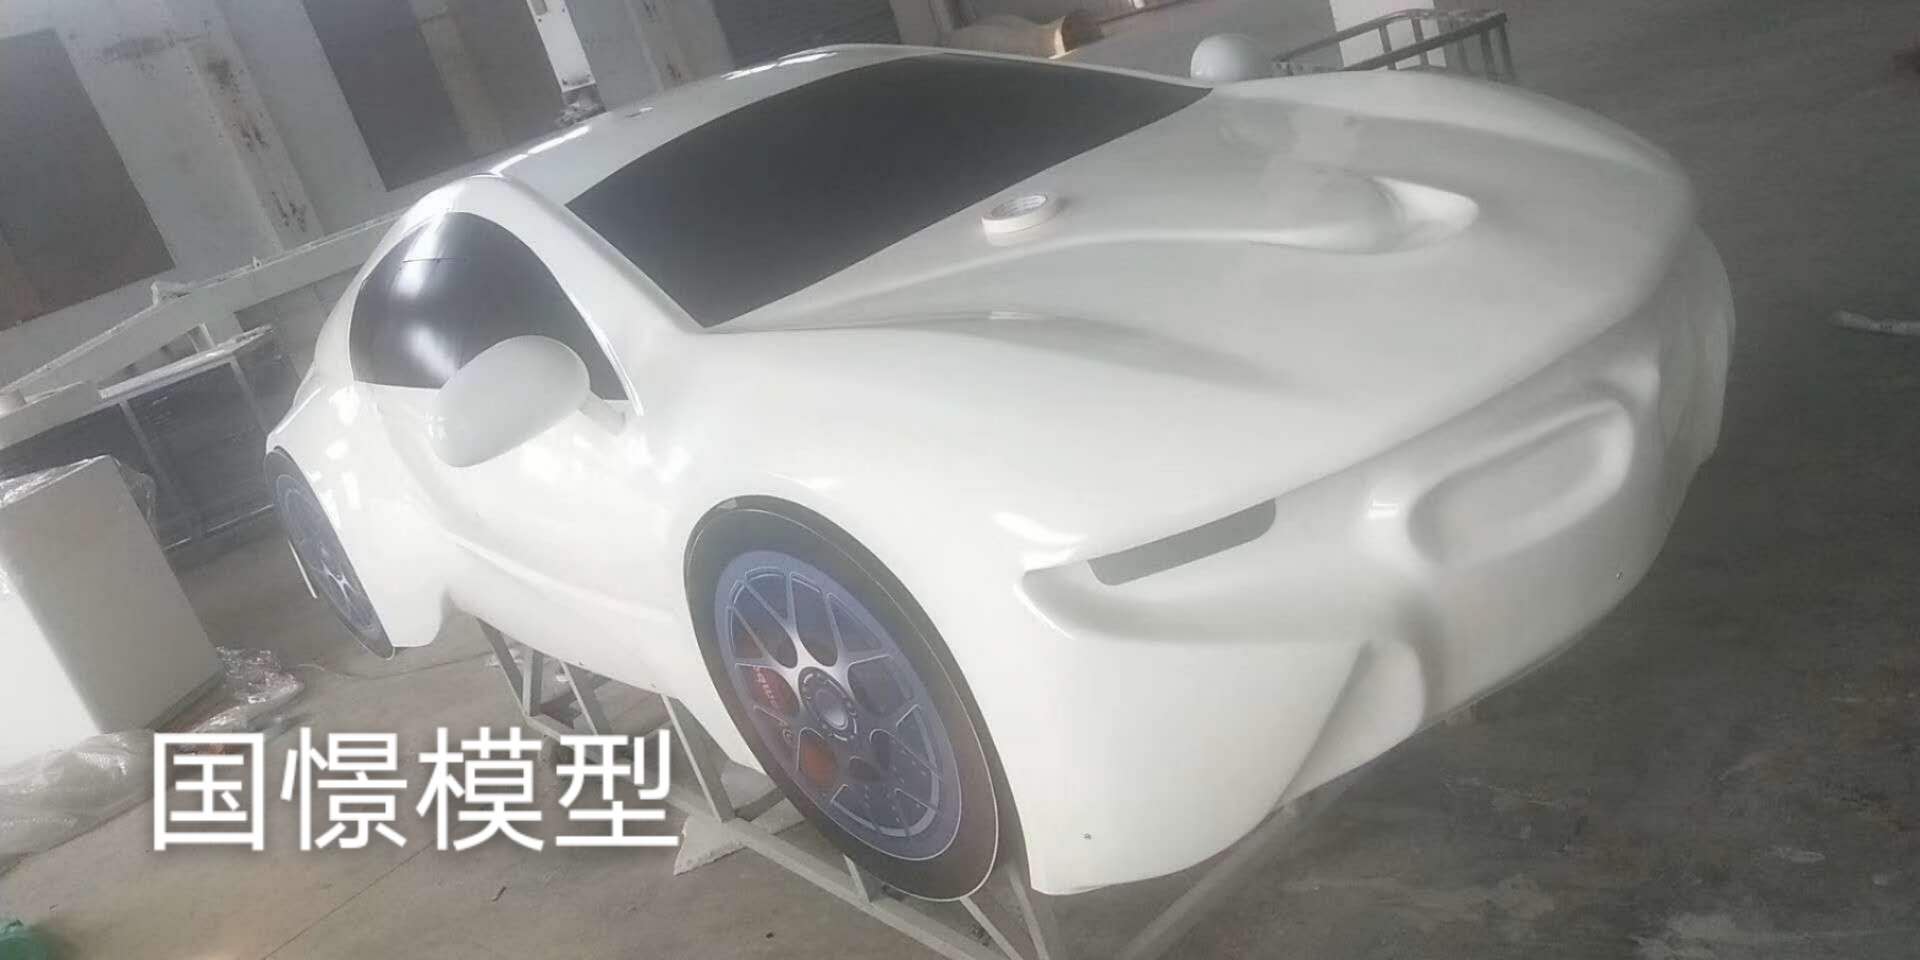 灵武县车辆模型